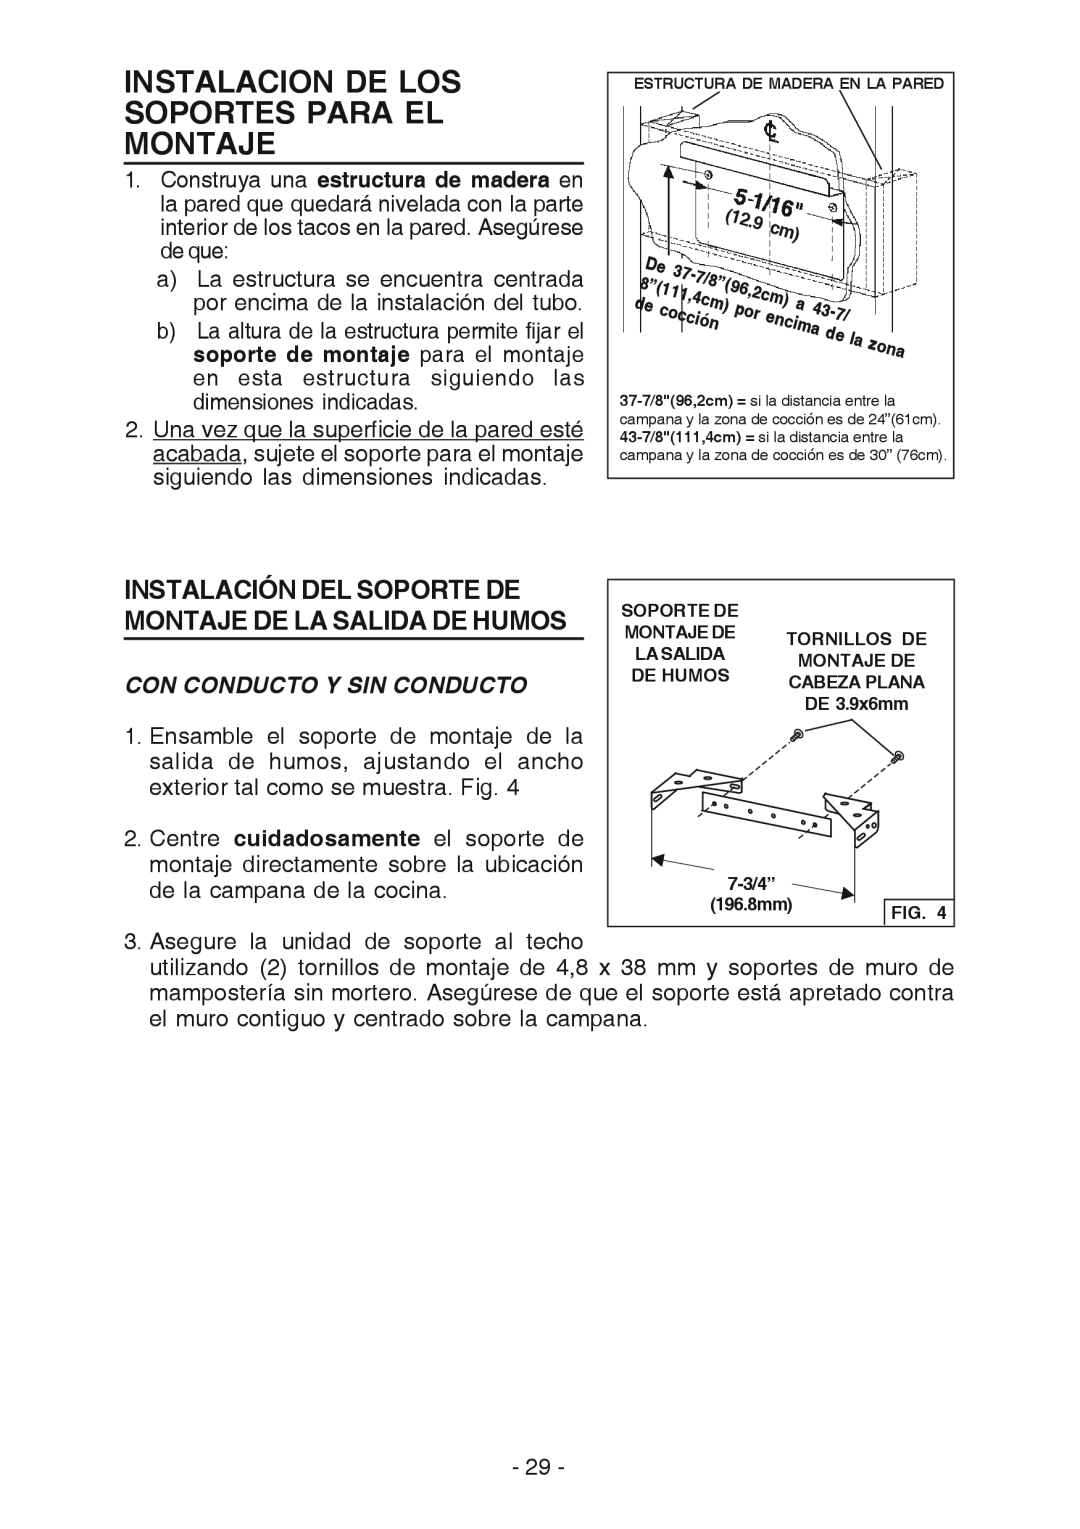 Best K3139 manual Instalacion De Los Soportes Para El Montaje, Con Conducto Y Sin Conducto 